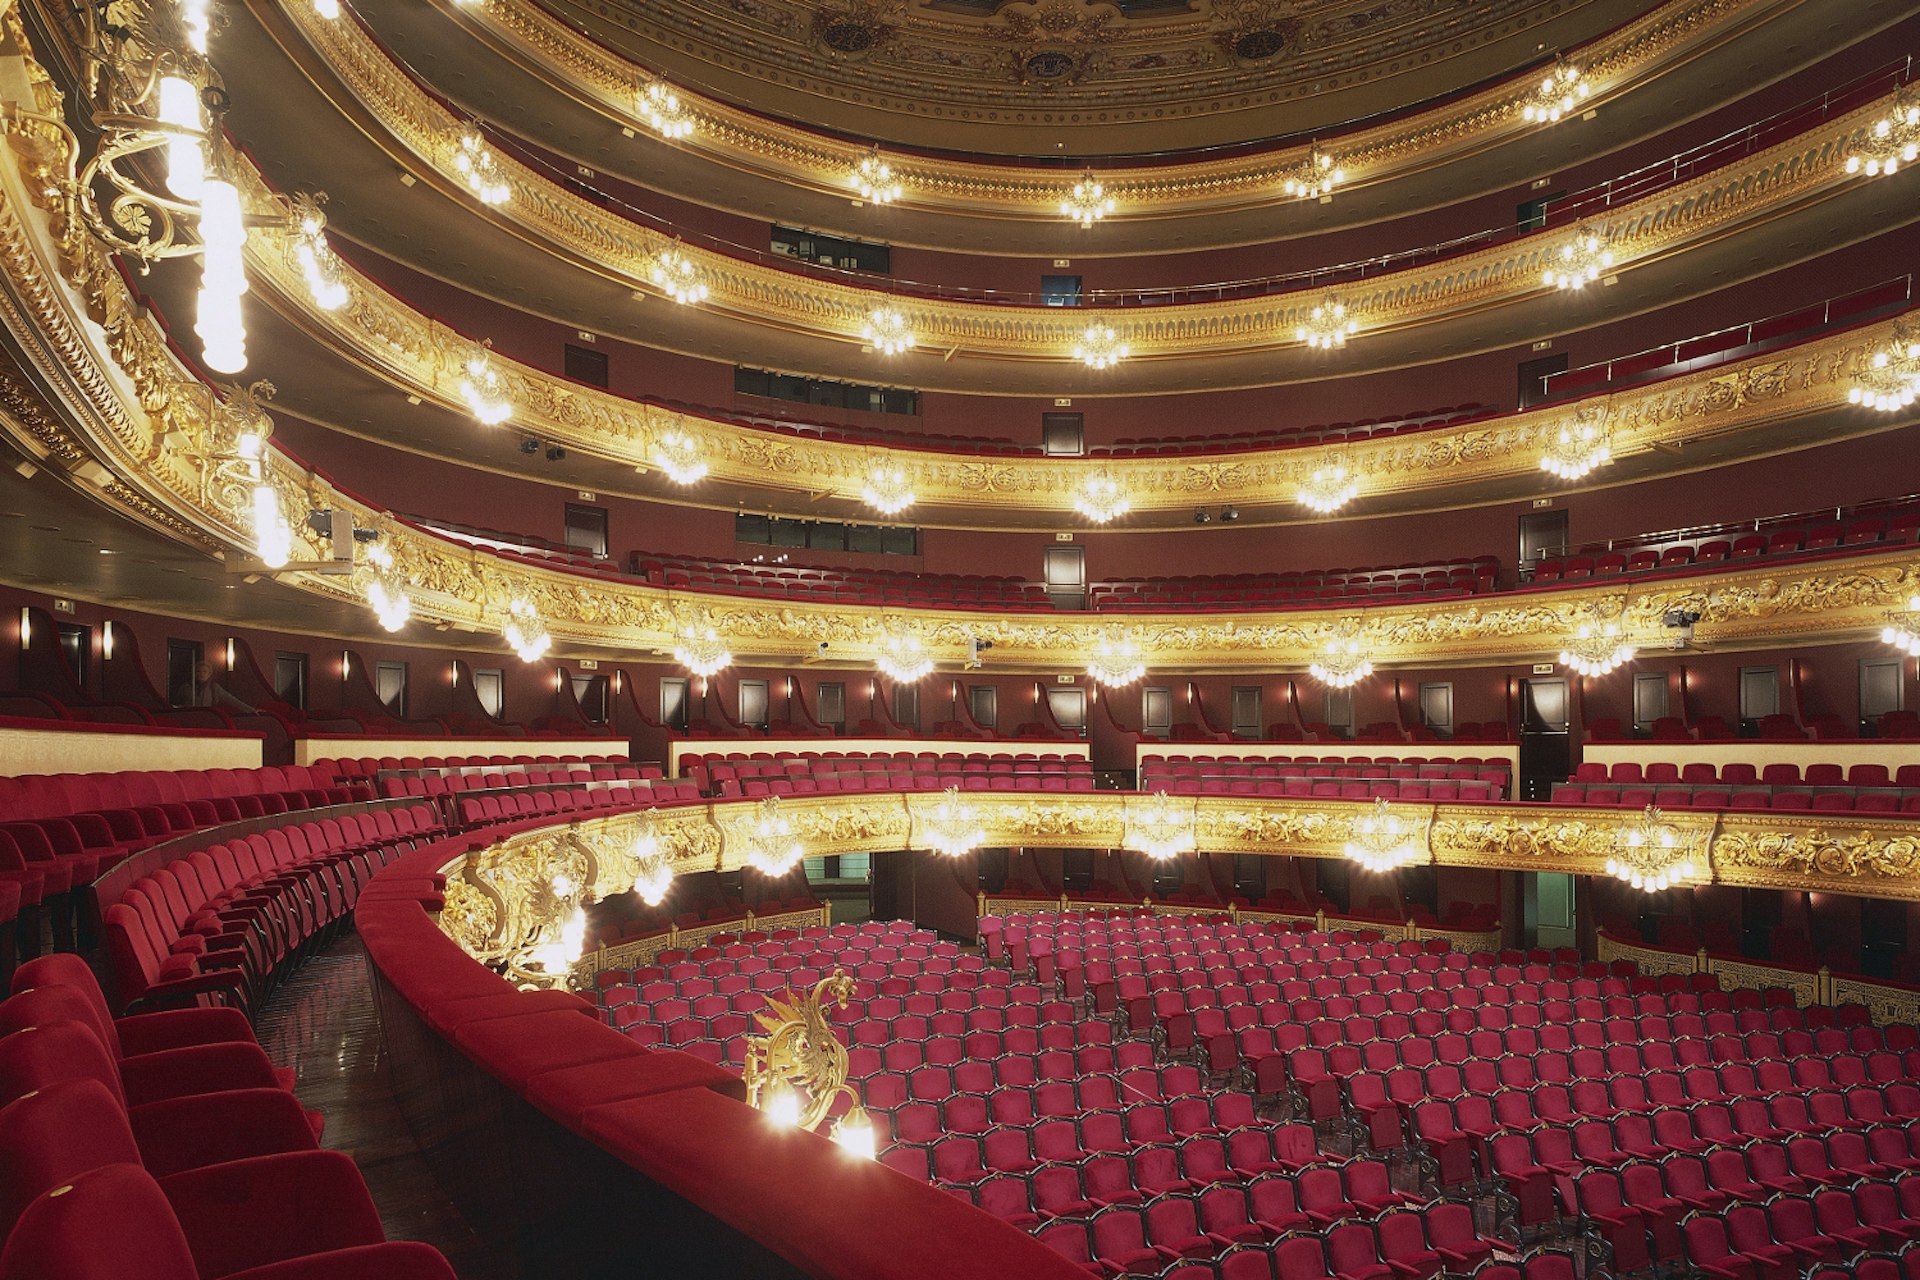 Hall of Gran Teatro del Liceu. Image by De Agostini / S. Vannini